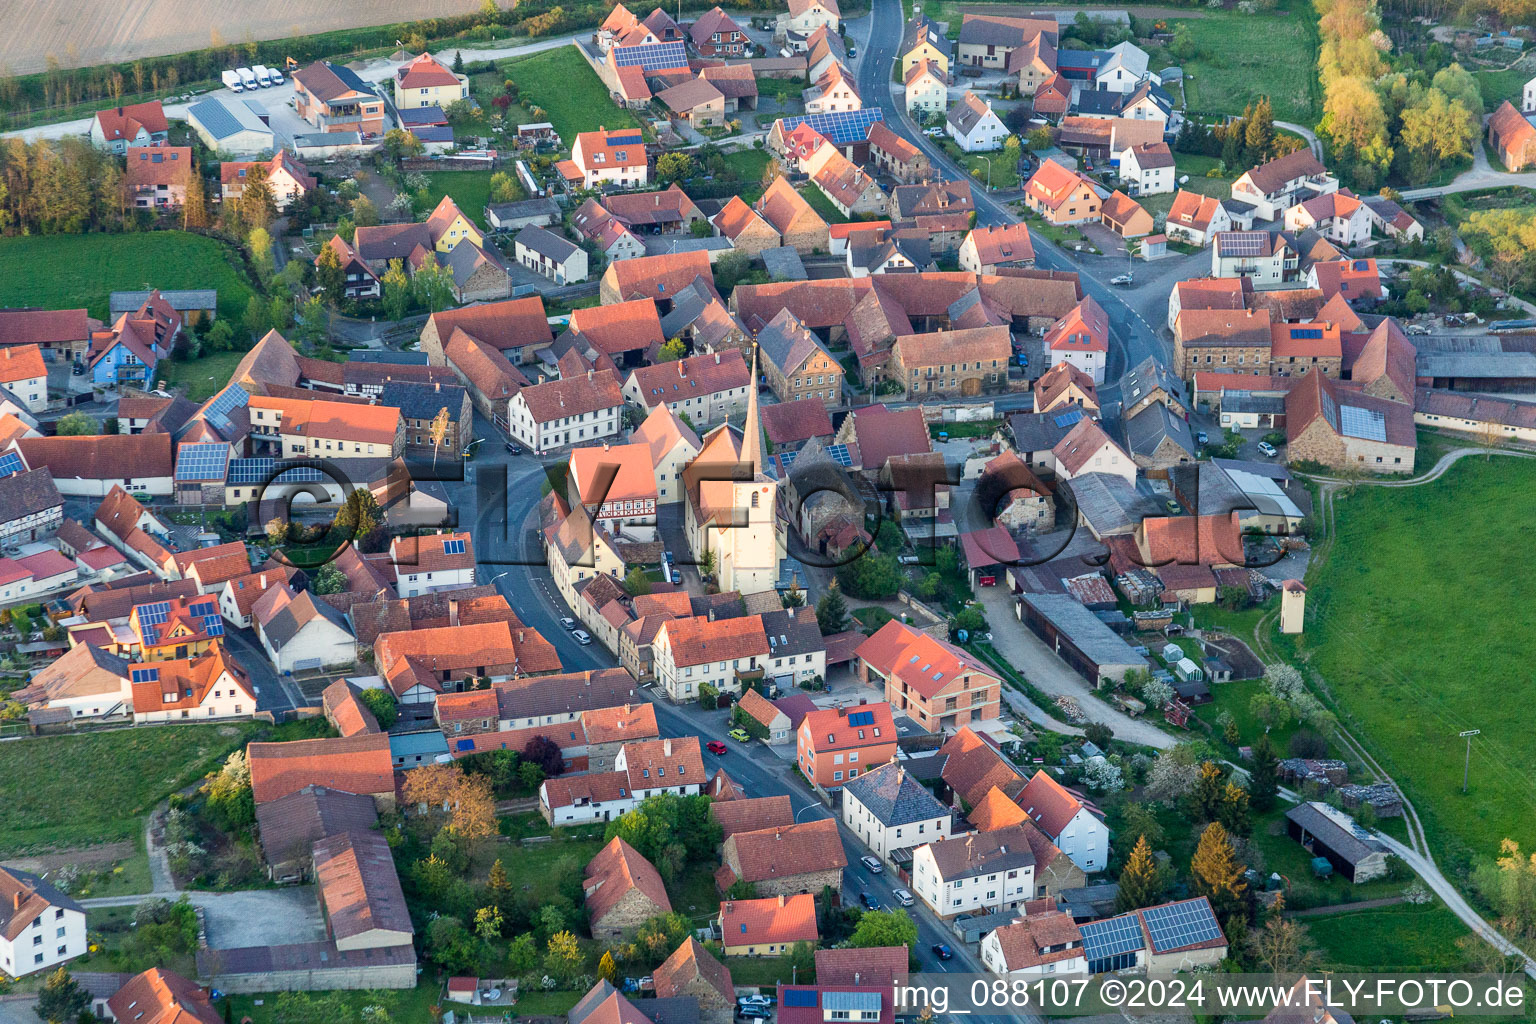 Vue aérienne de Bâtiment d'église au centre du village à Stadelschwarzach dans le département Bavière, Allemagne